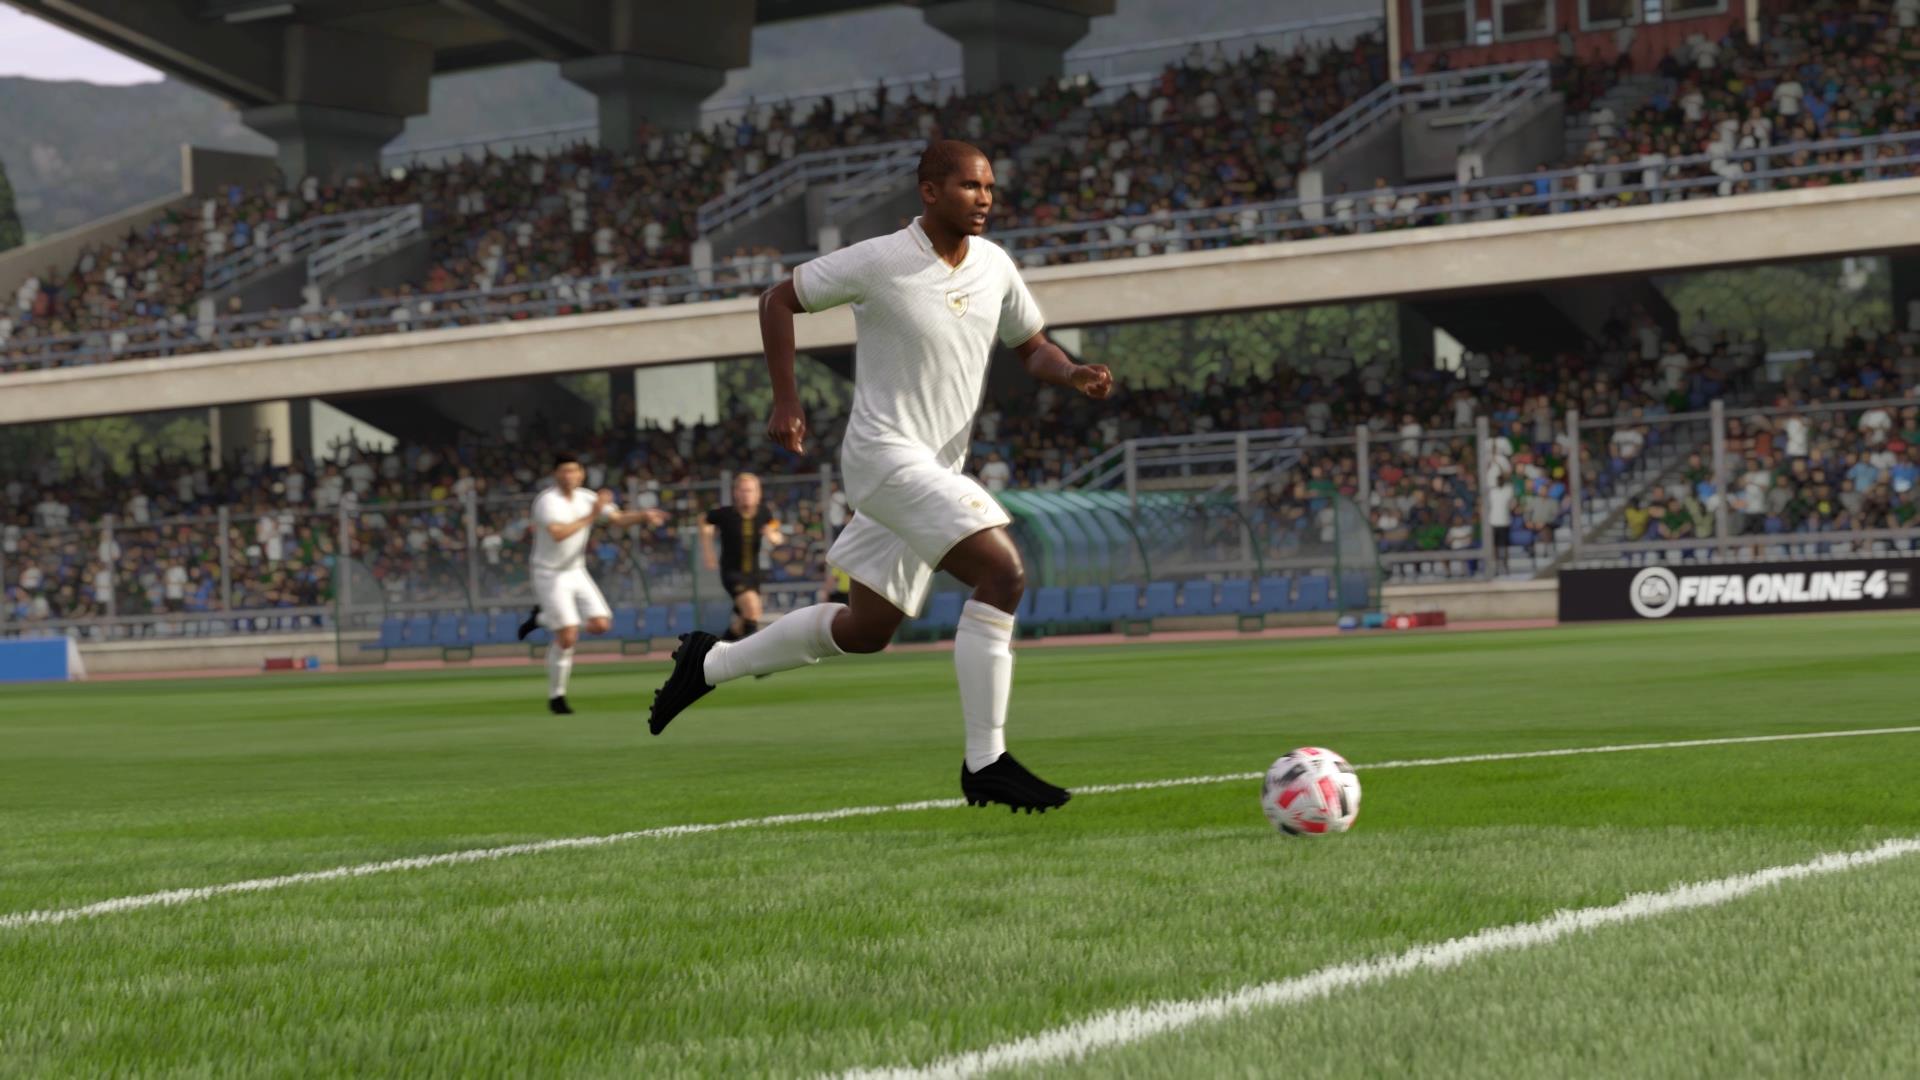 Báo đen Eto’o tái xuất FIFA Online 4 trong mùa thẻ huyền thoại, game thủ ráo riết tìm thủ môn xuất sắc để chuẩn bị 